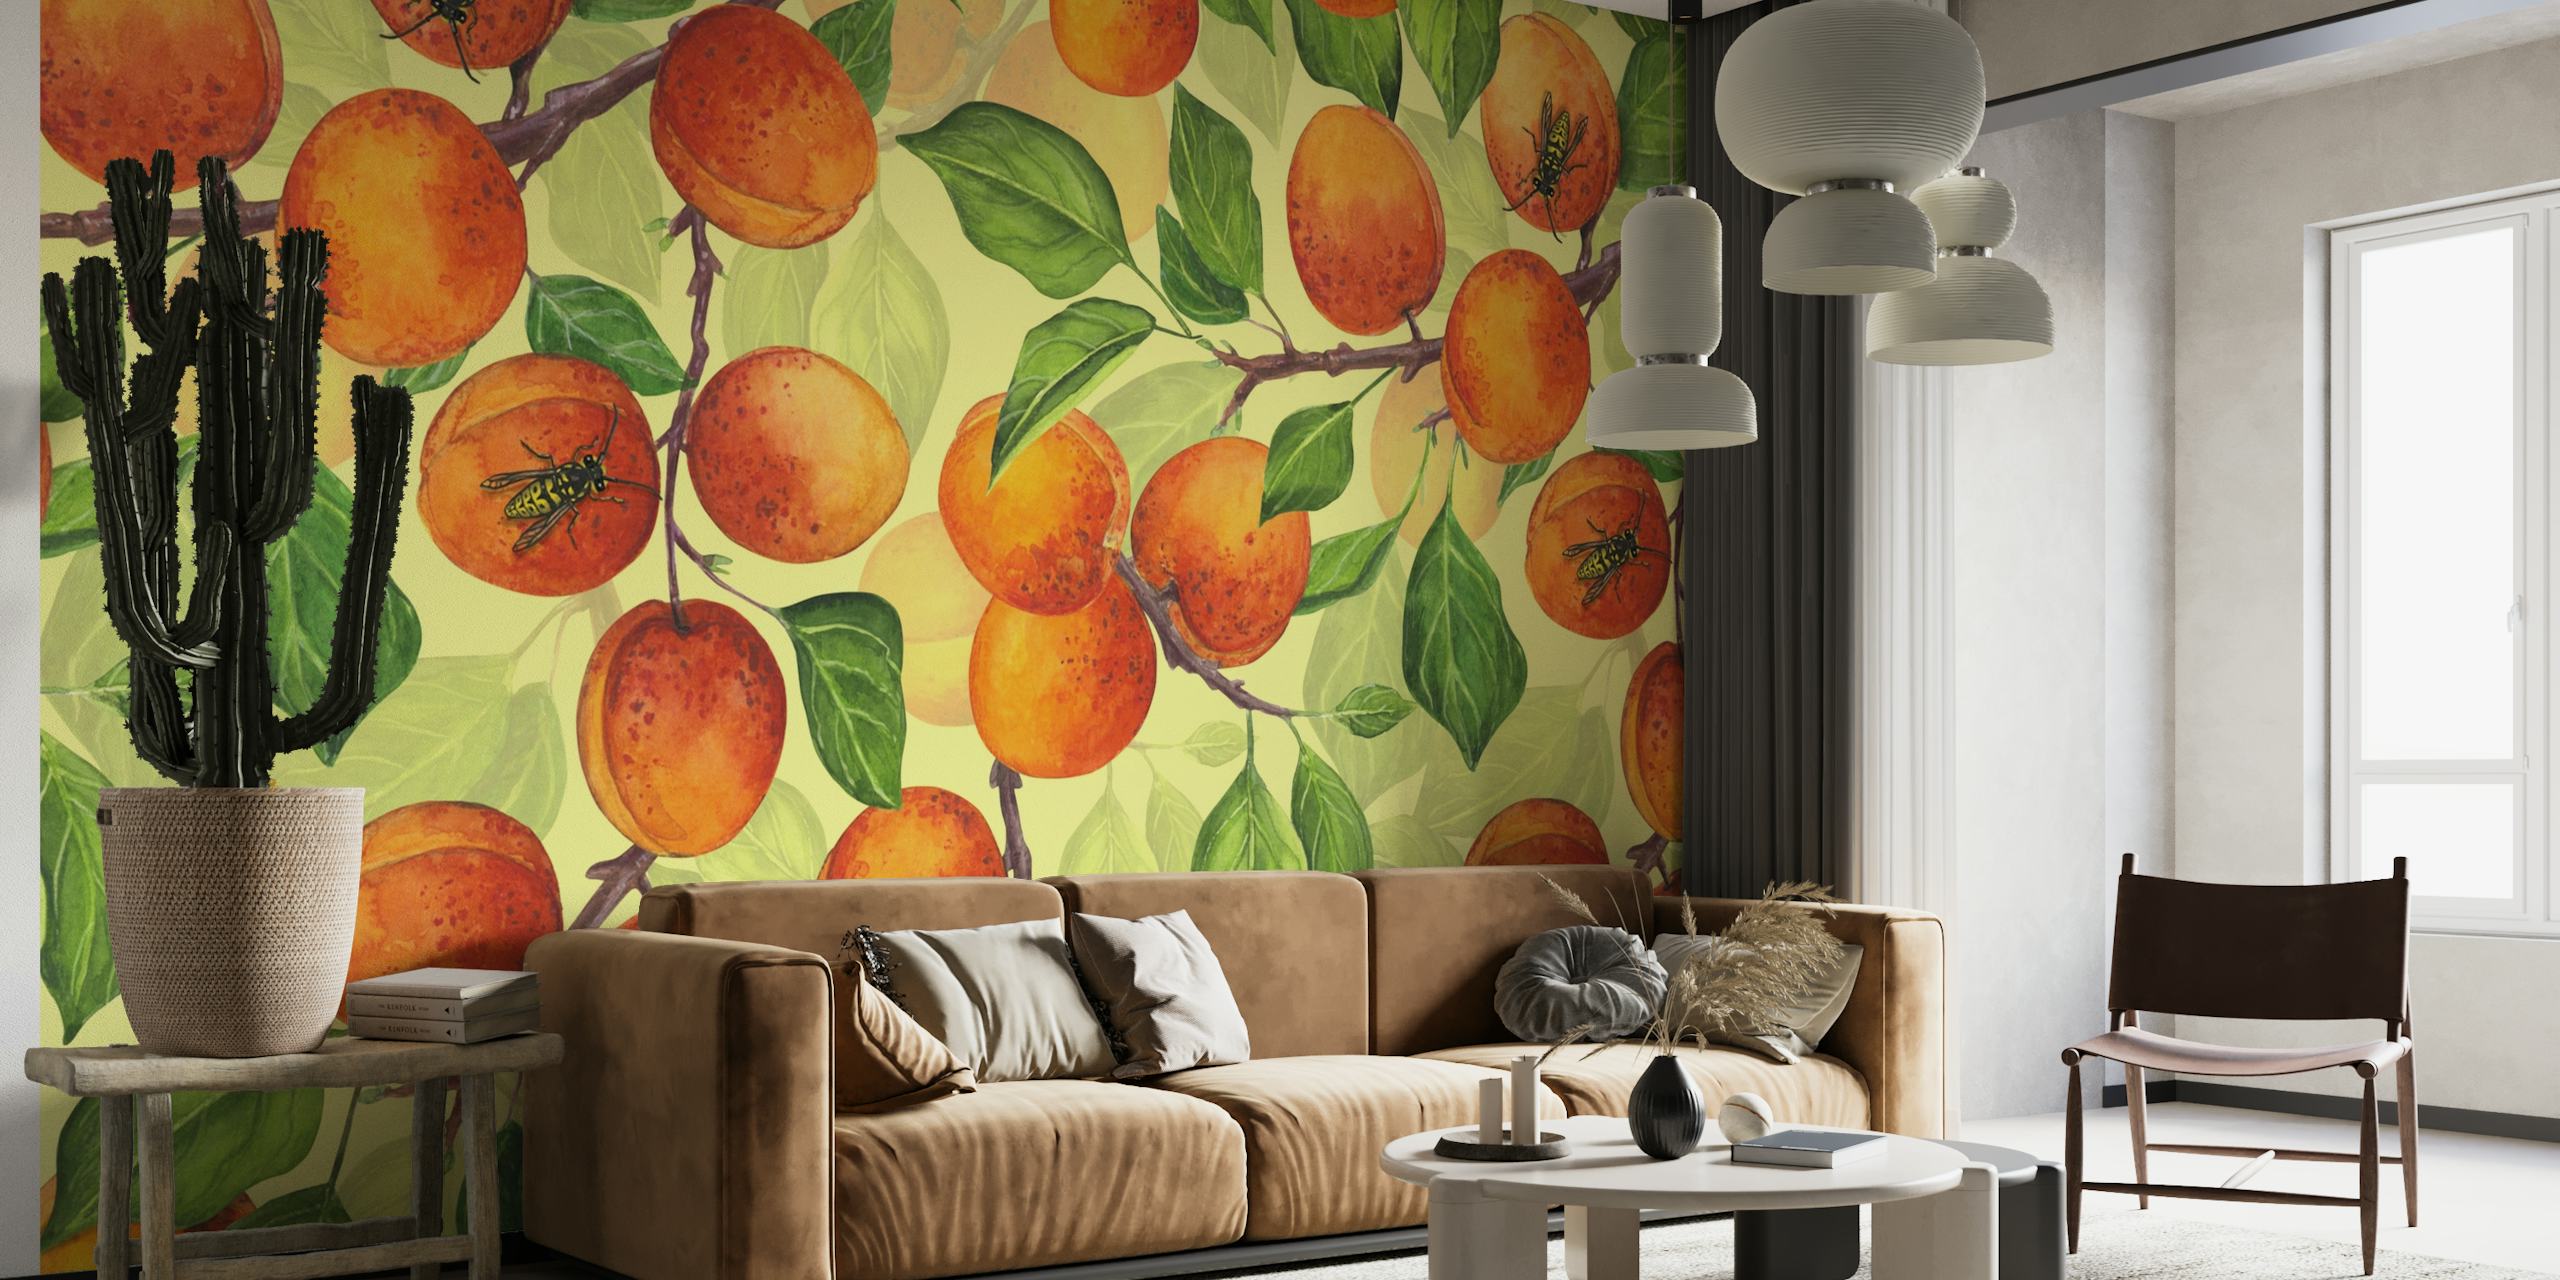 Apricot garden 2 wallpaper